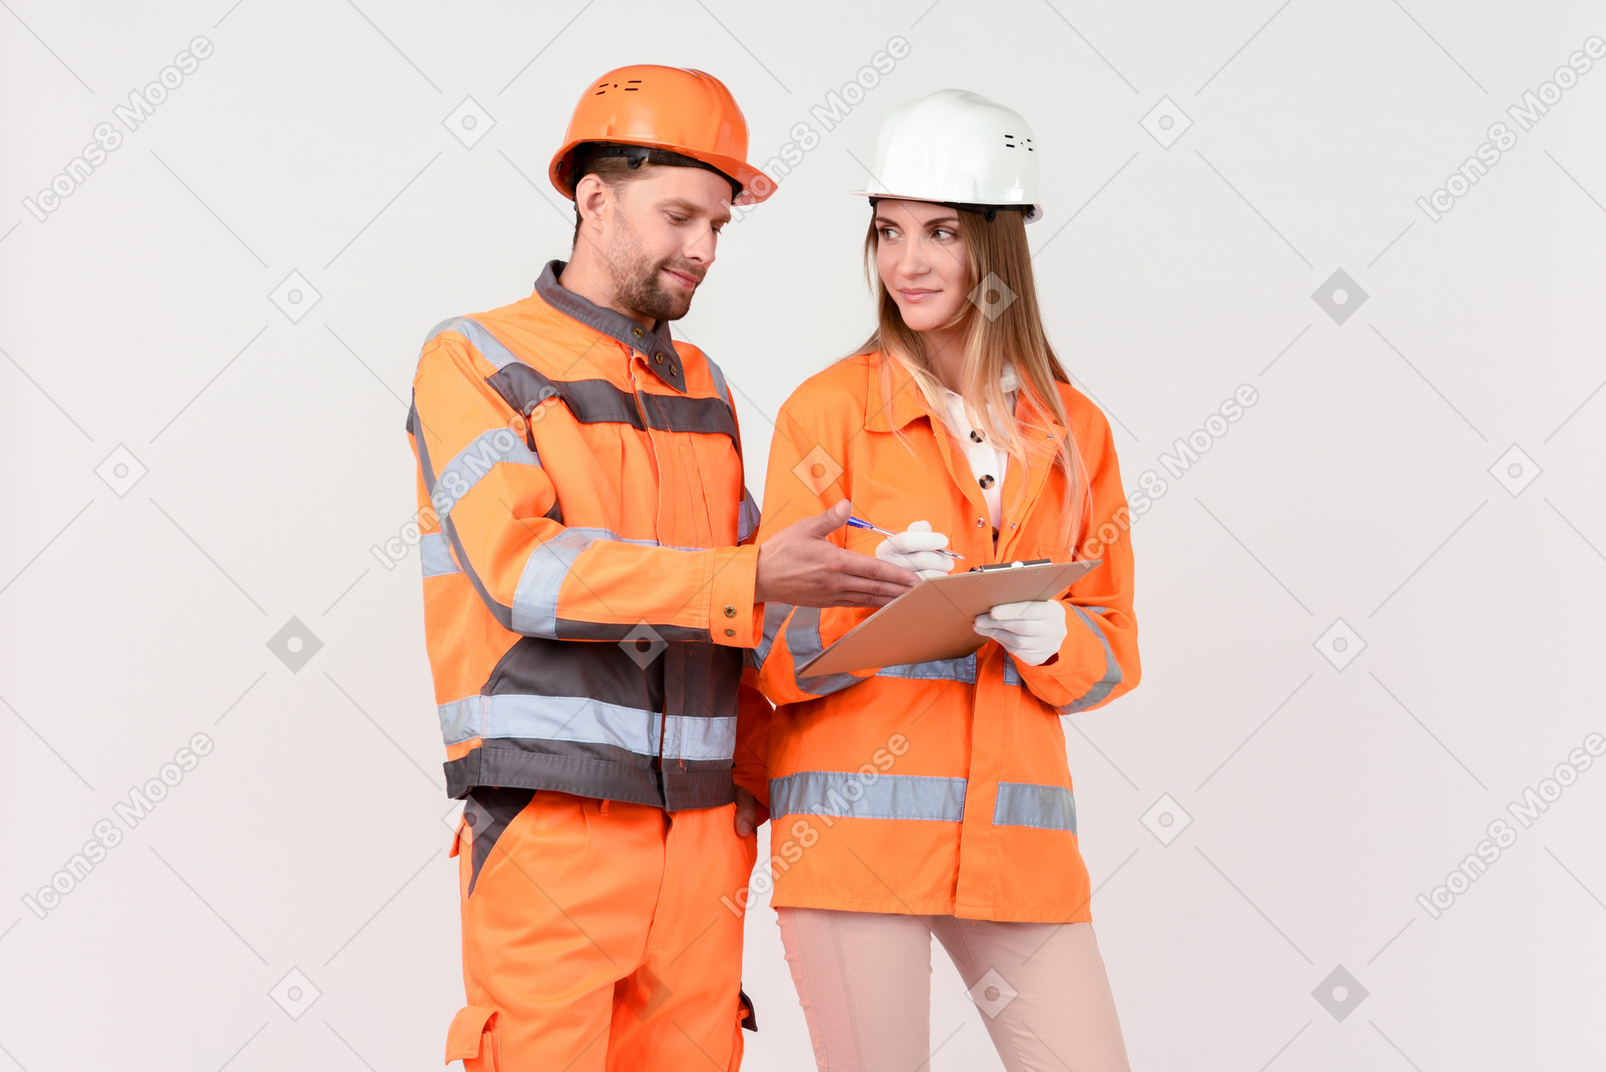 Des travailleurs masculins et féminins discutent de quelque chose